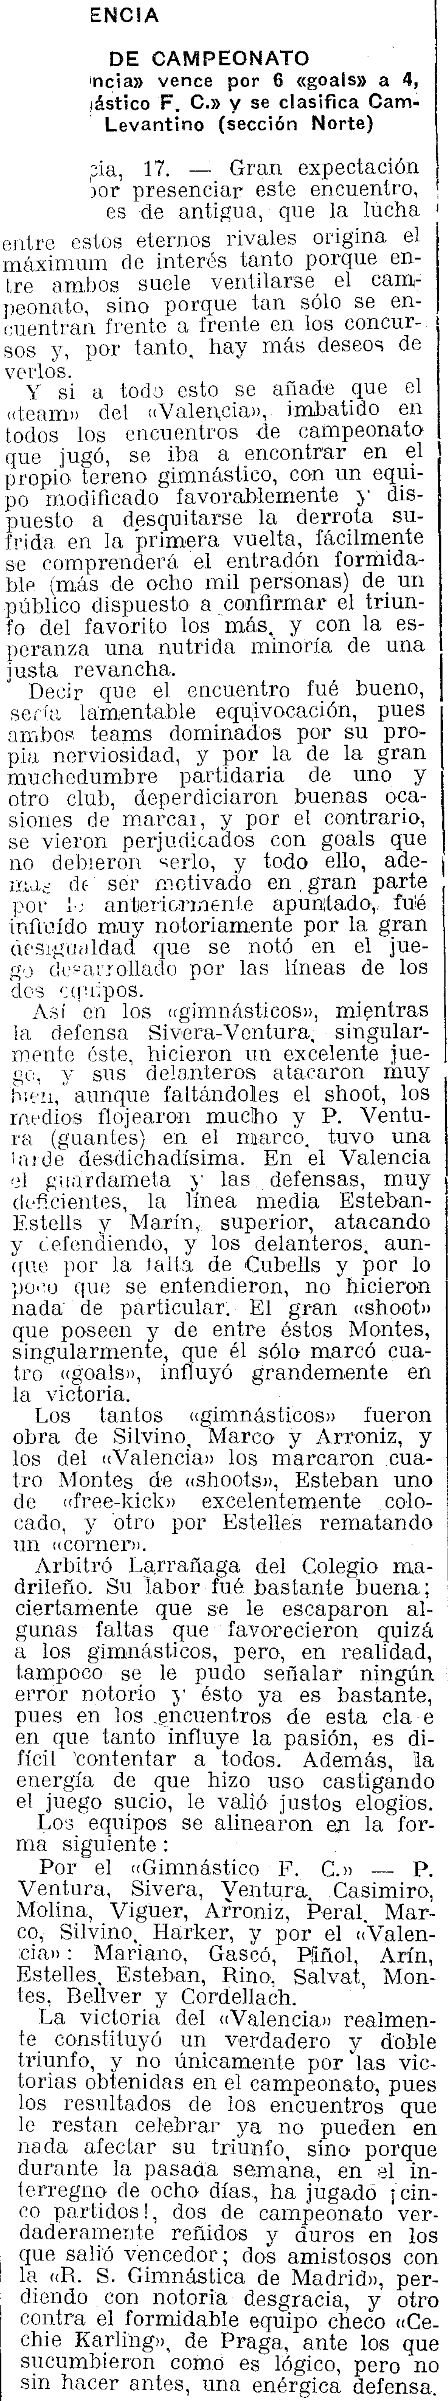 1922.12.17 (17 декабря 1922), Гимнастико - Валенсия, 4-6 (2).png